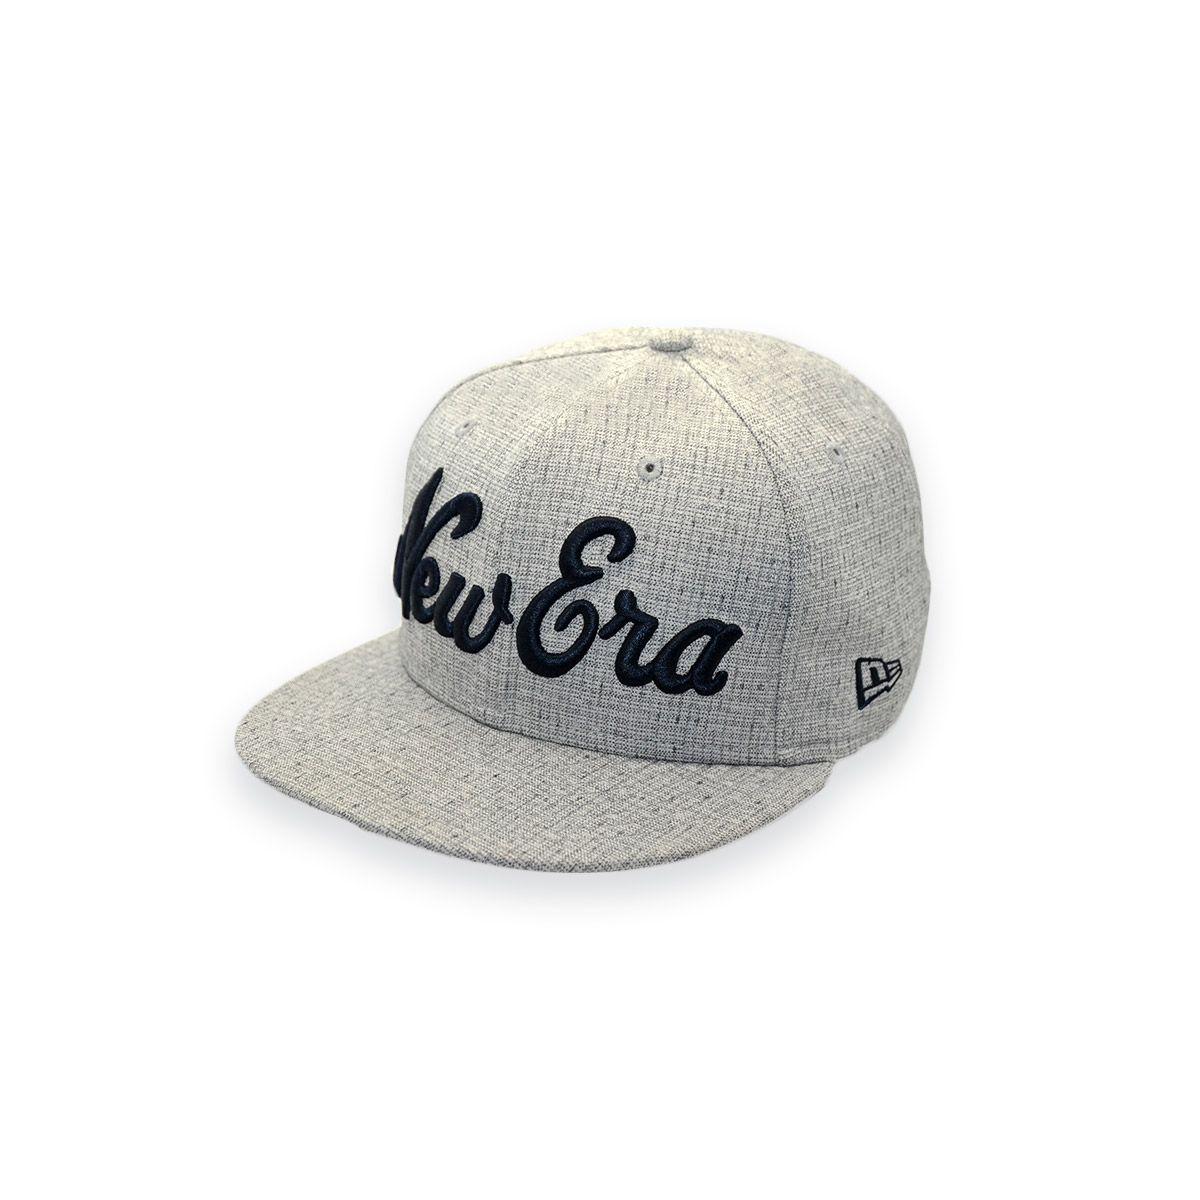 New Era Cap Logo - NEW ERA LOGO GREY FITTED CAP HAT 7-3/8 - 58.7CM | eBay